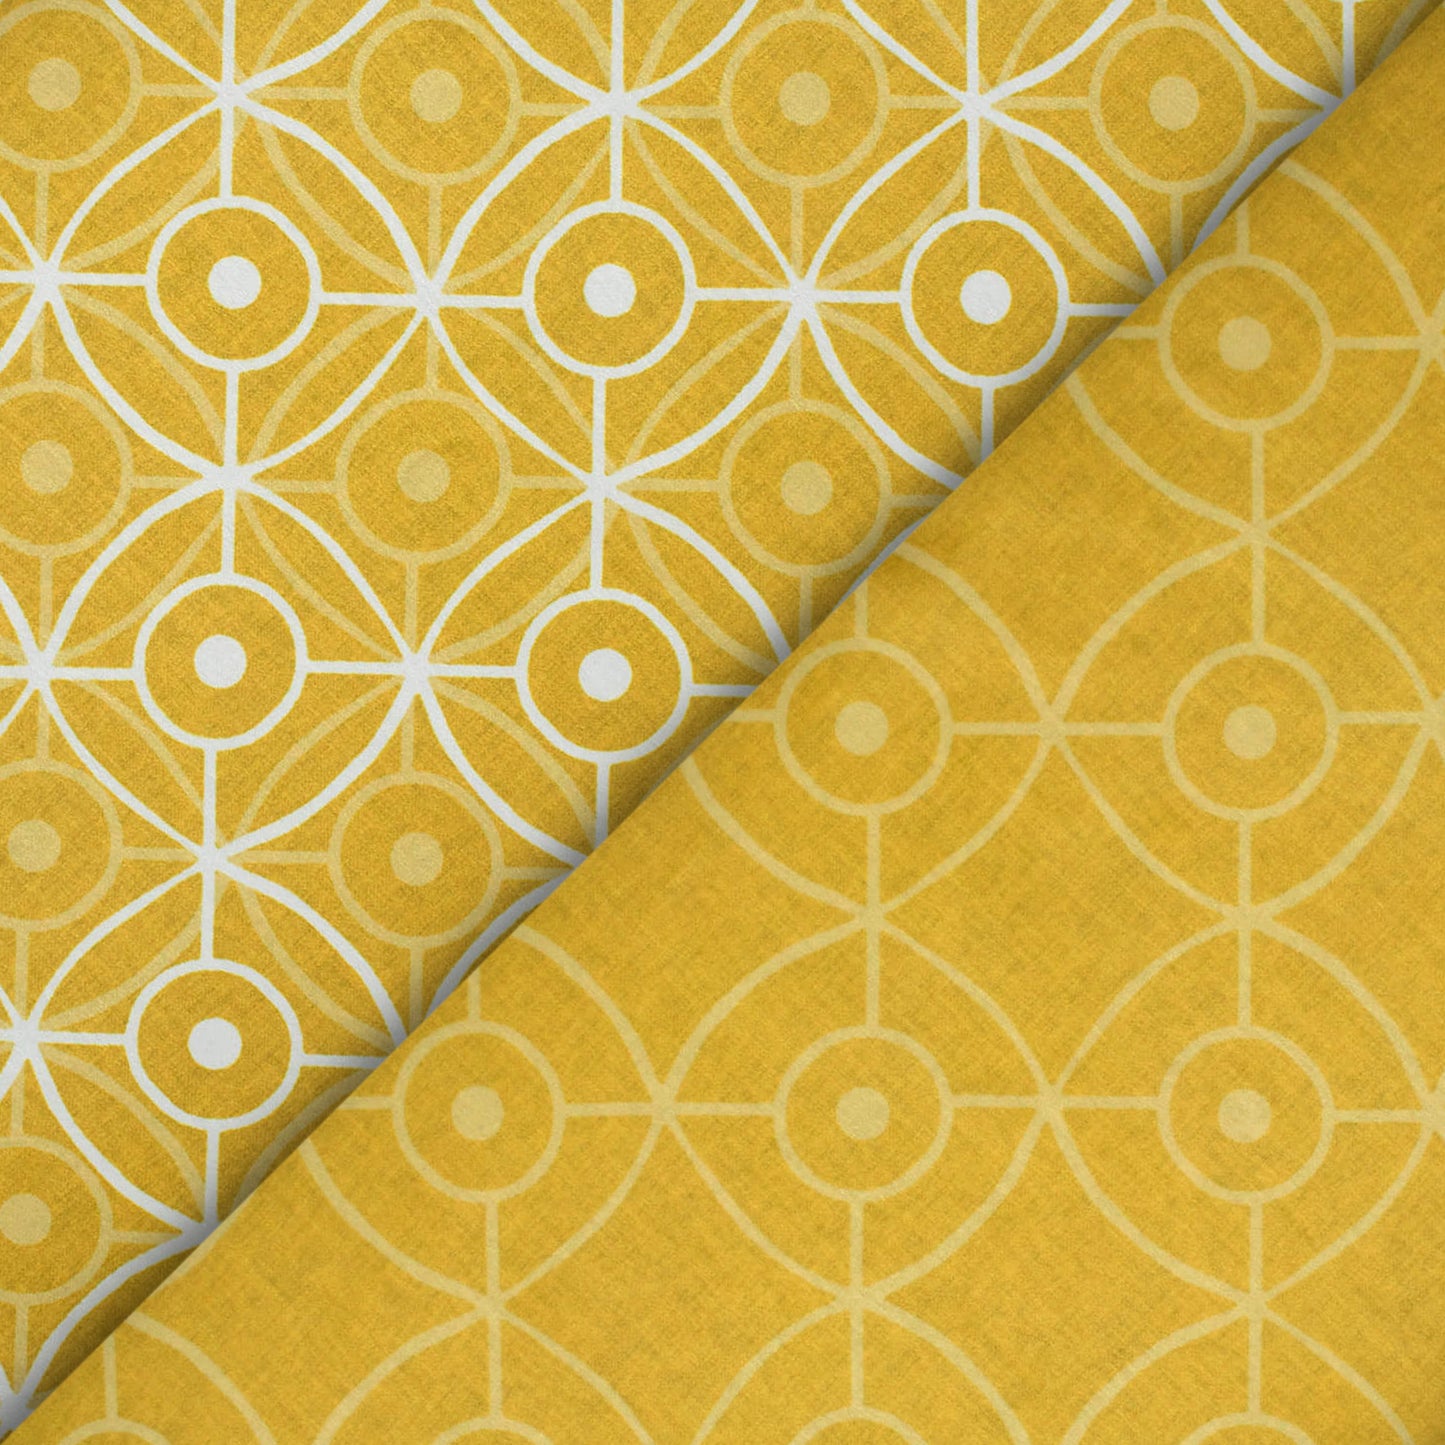 Tuscany Yellow And White Geometric Pattern Digital Print Lush Satin Fabric